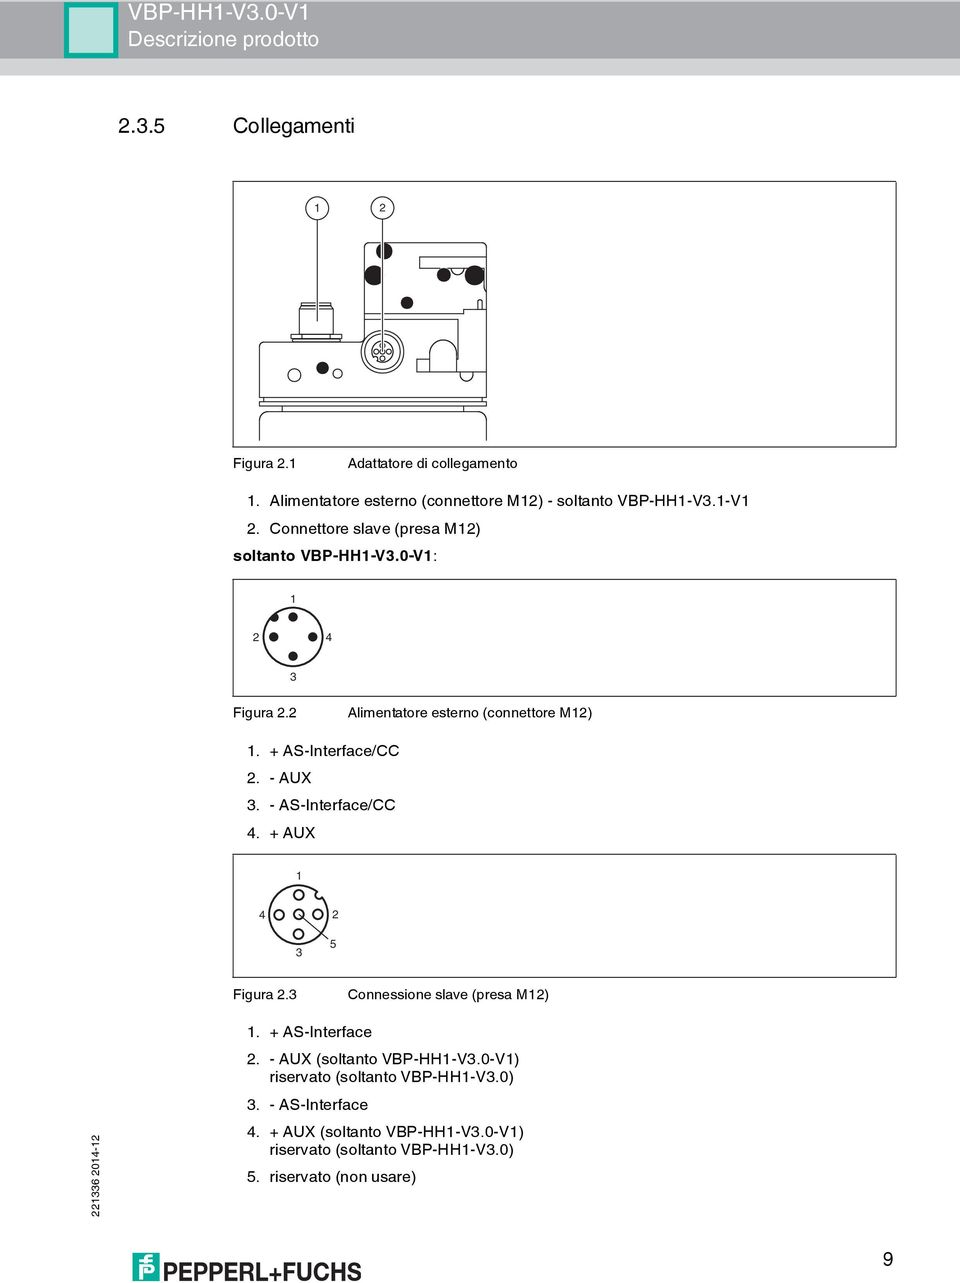 2 Alimentatore esterno (connettore M12) 1. + AS-Interface/CC 2. - AUX. - AS-Interface/CC 4. + AUX 1 4 2 5 Figura 2.